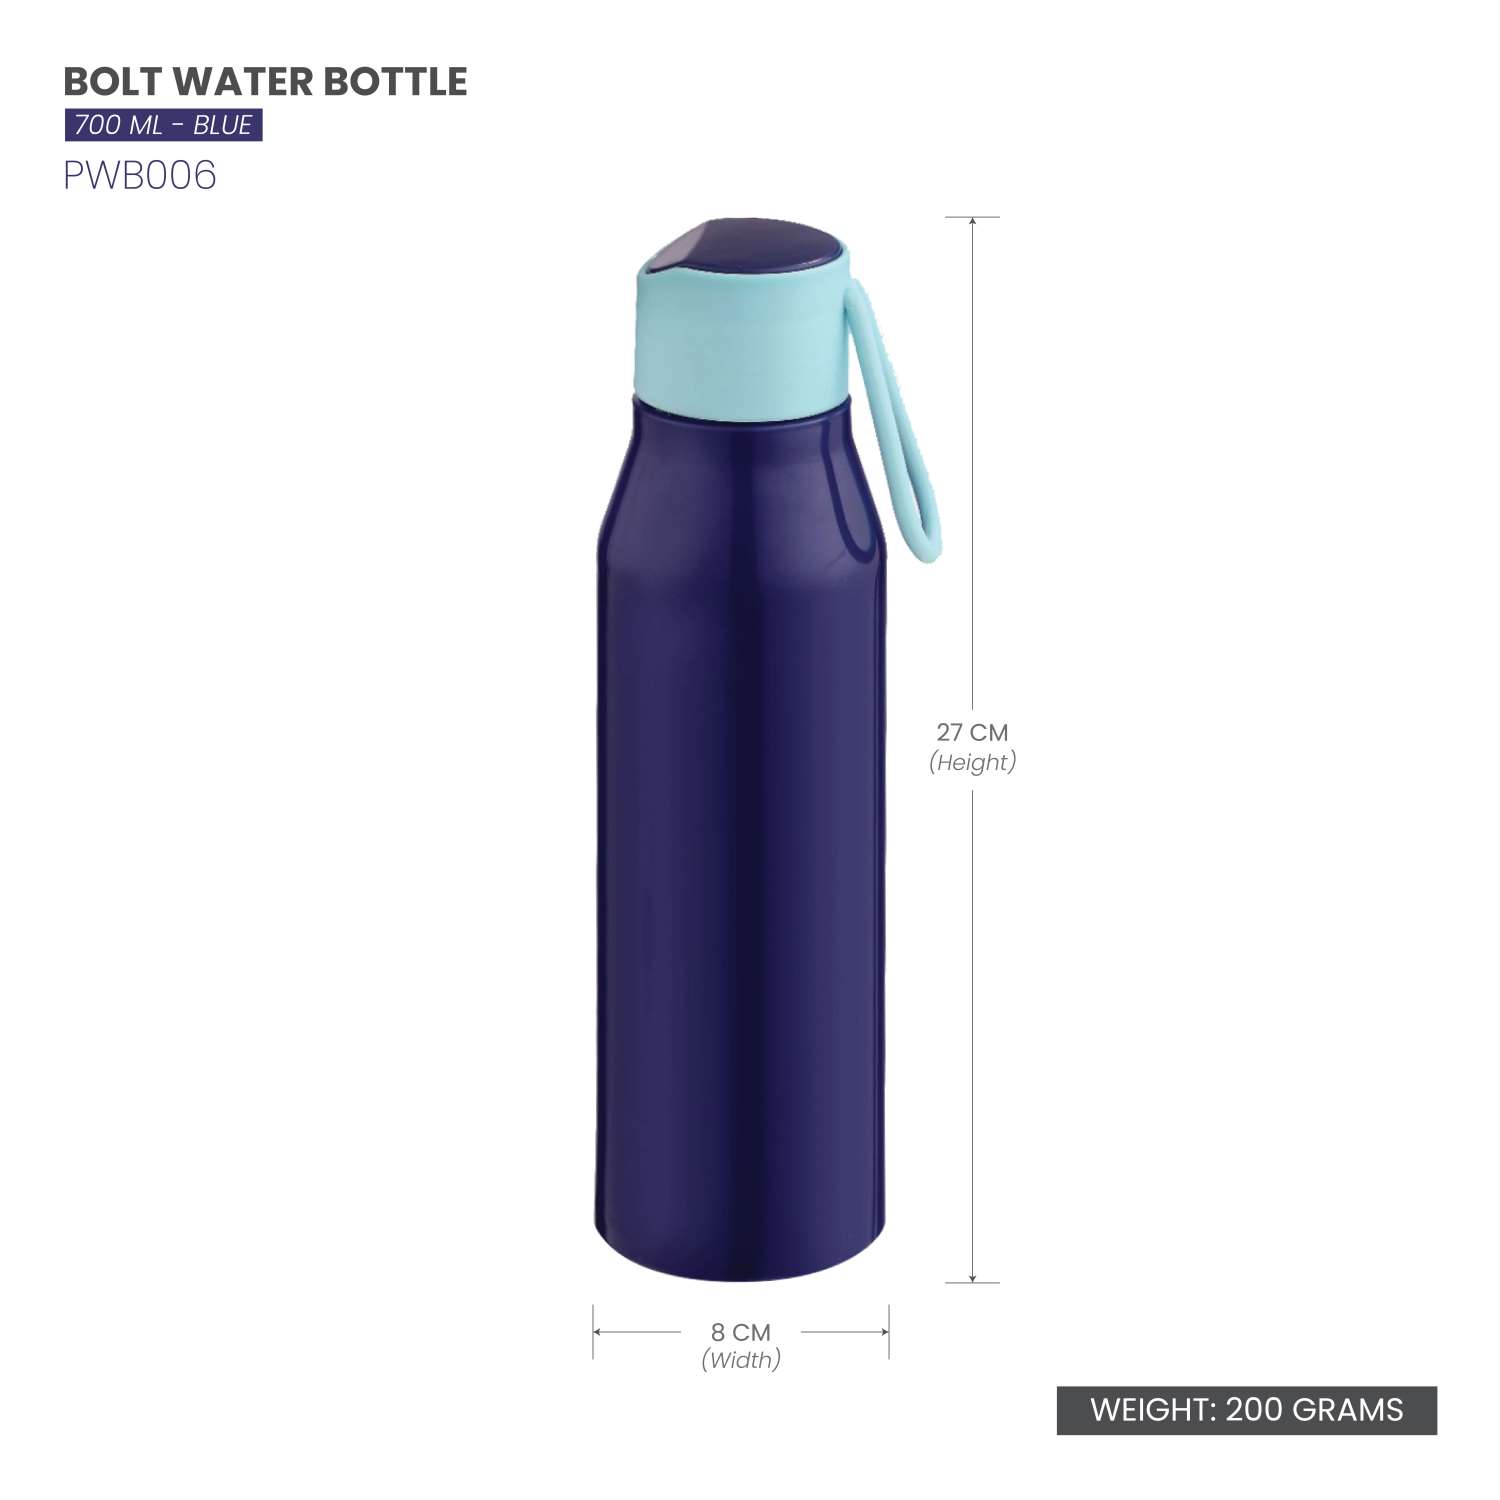 Selvel Bolt Plastic Water Bottle Blue 700Ml